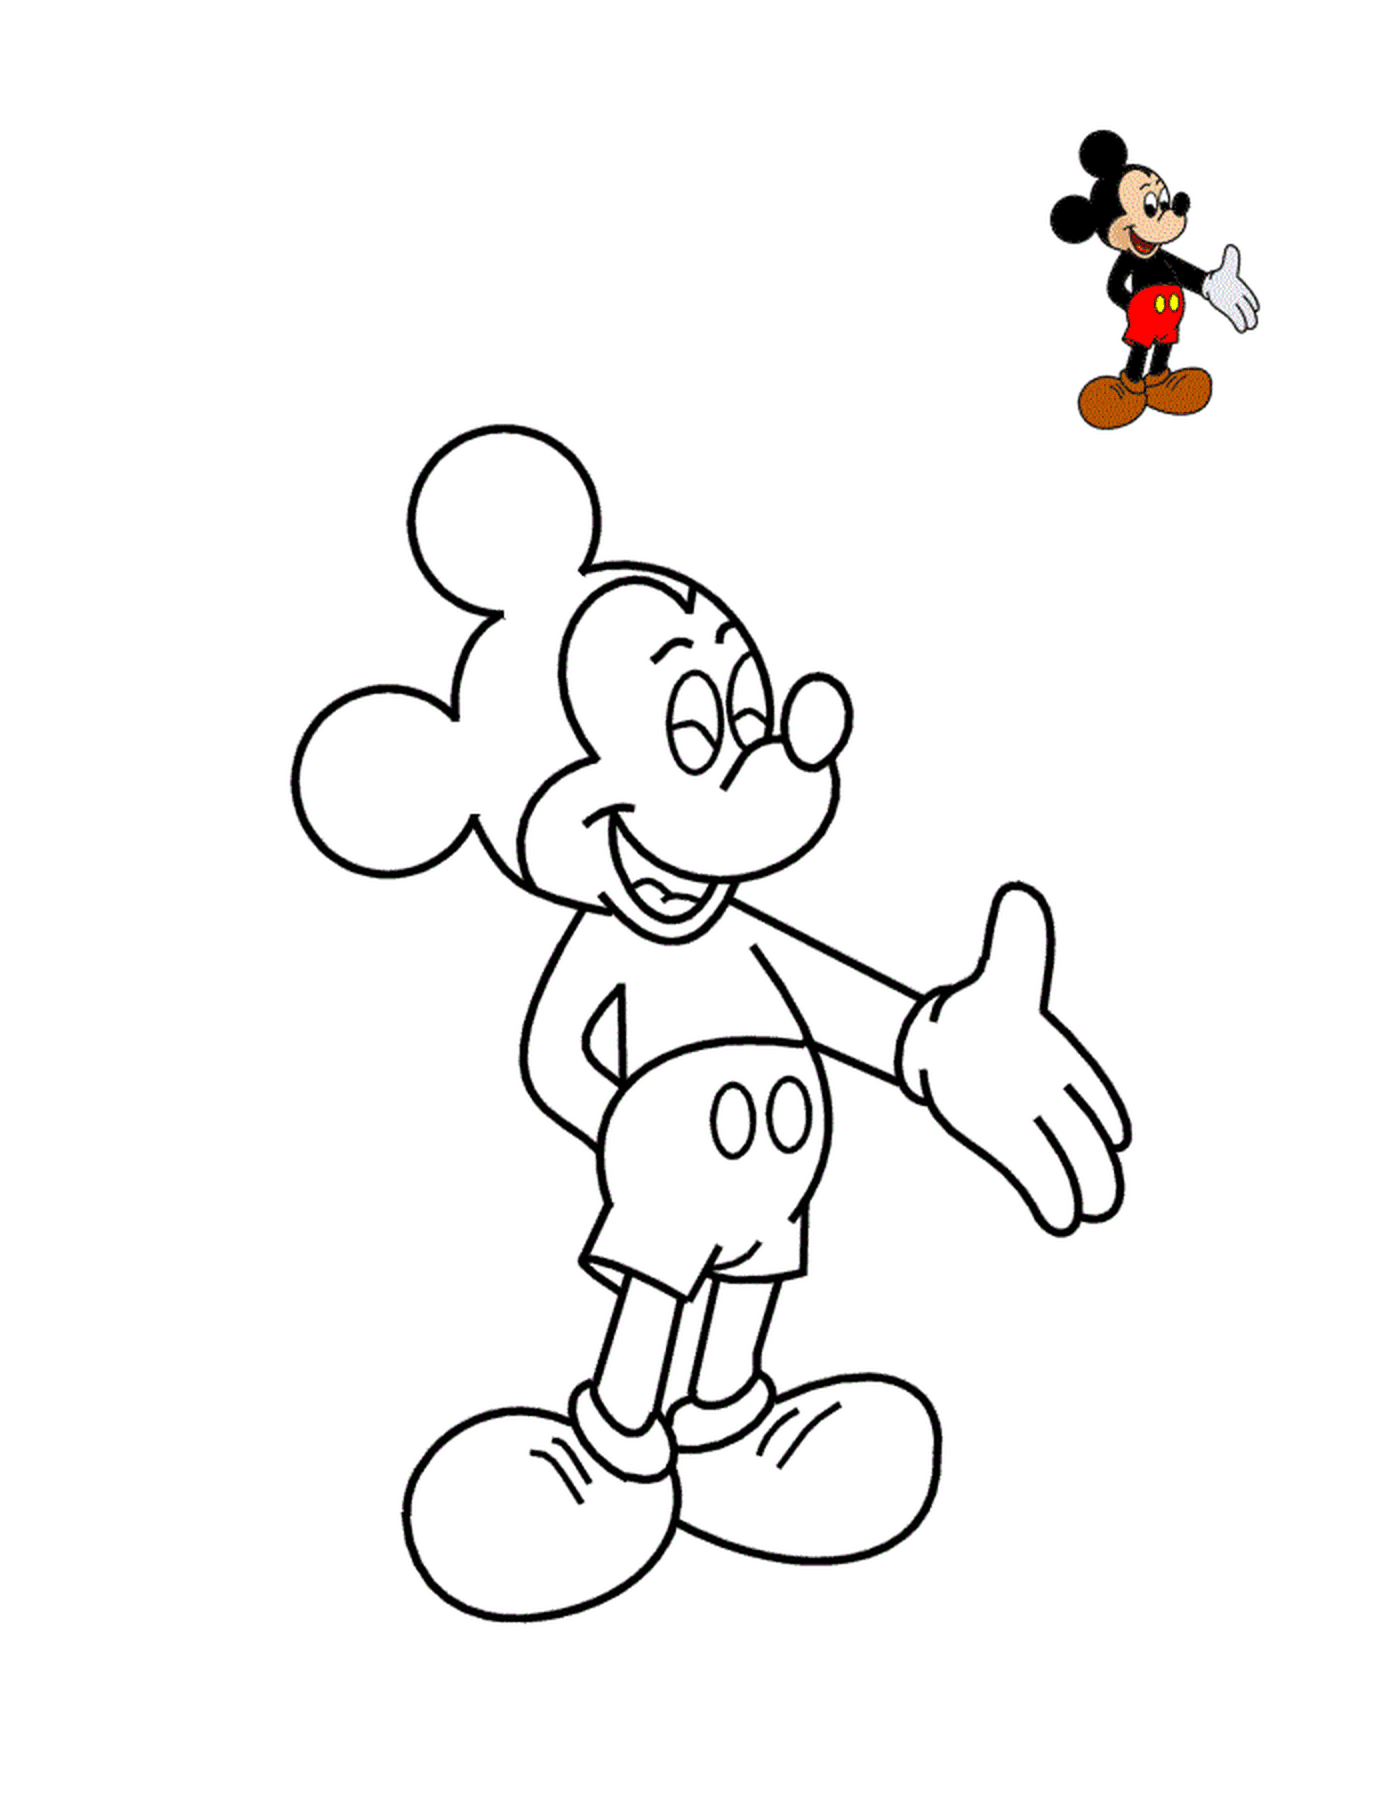   Mickey Mouse, symbole de Disney Land 